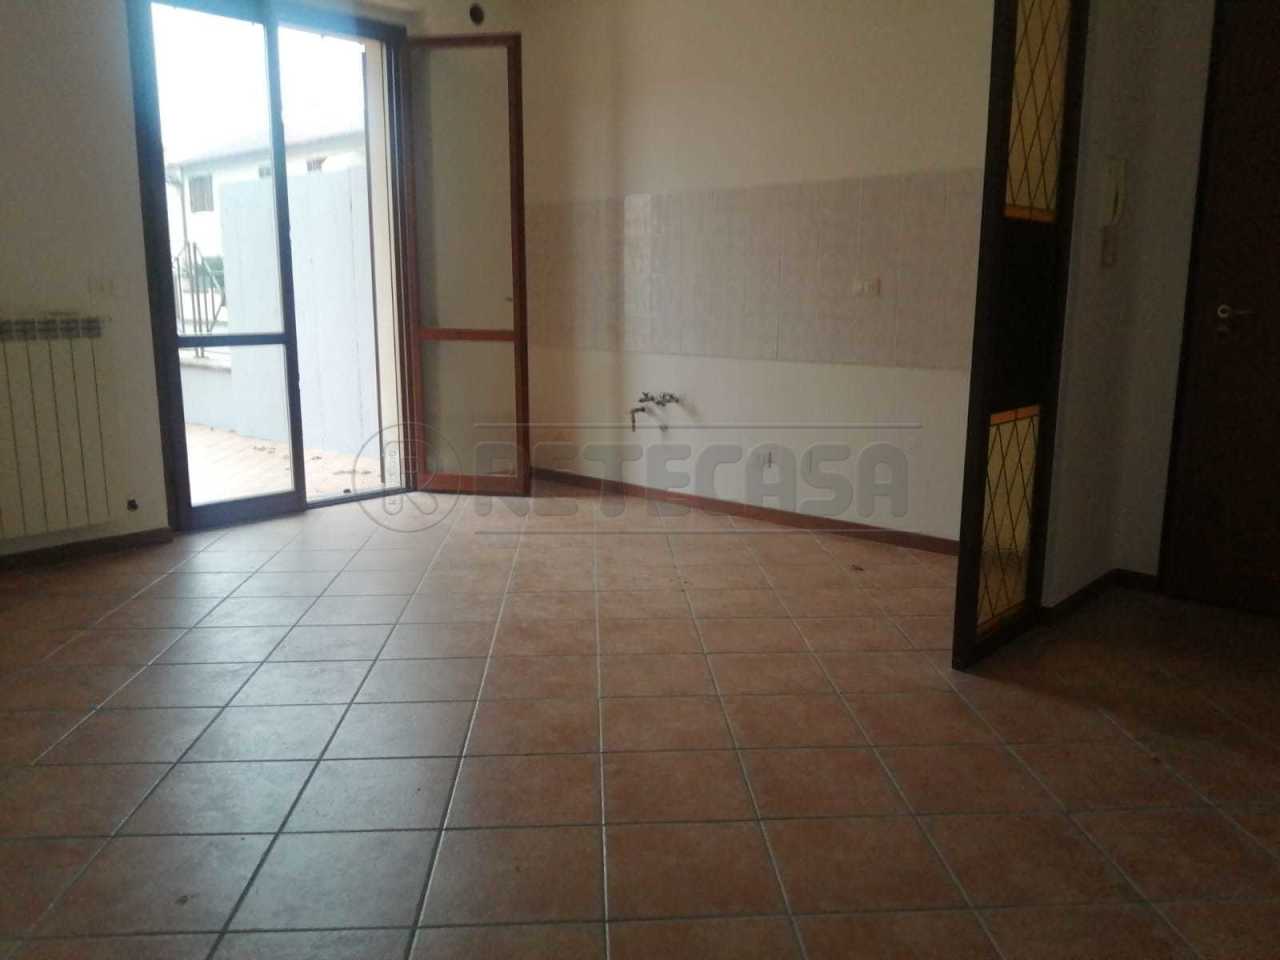 Appartamento in vendita a Castelleone, 3 locali, prezzo € 115.000 | PortaleAgenzieImmobiliari.it